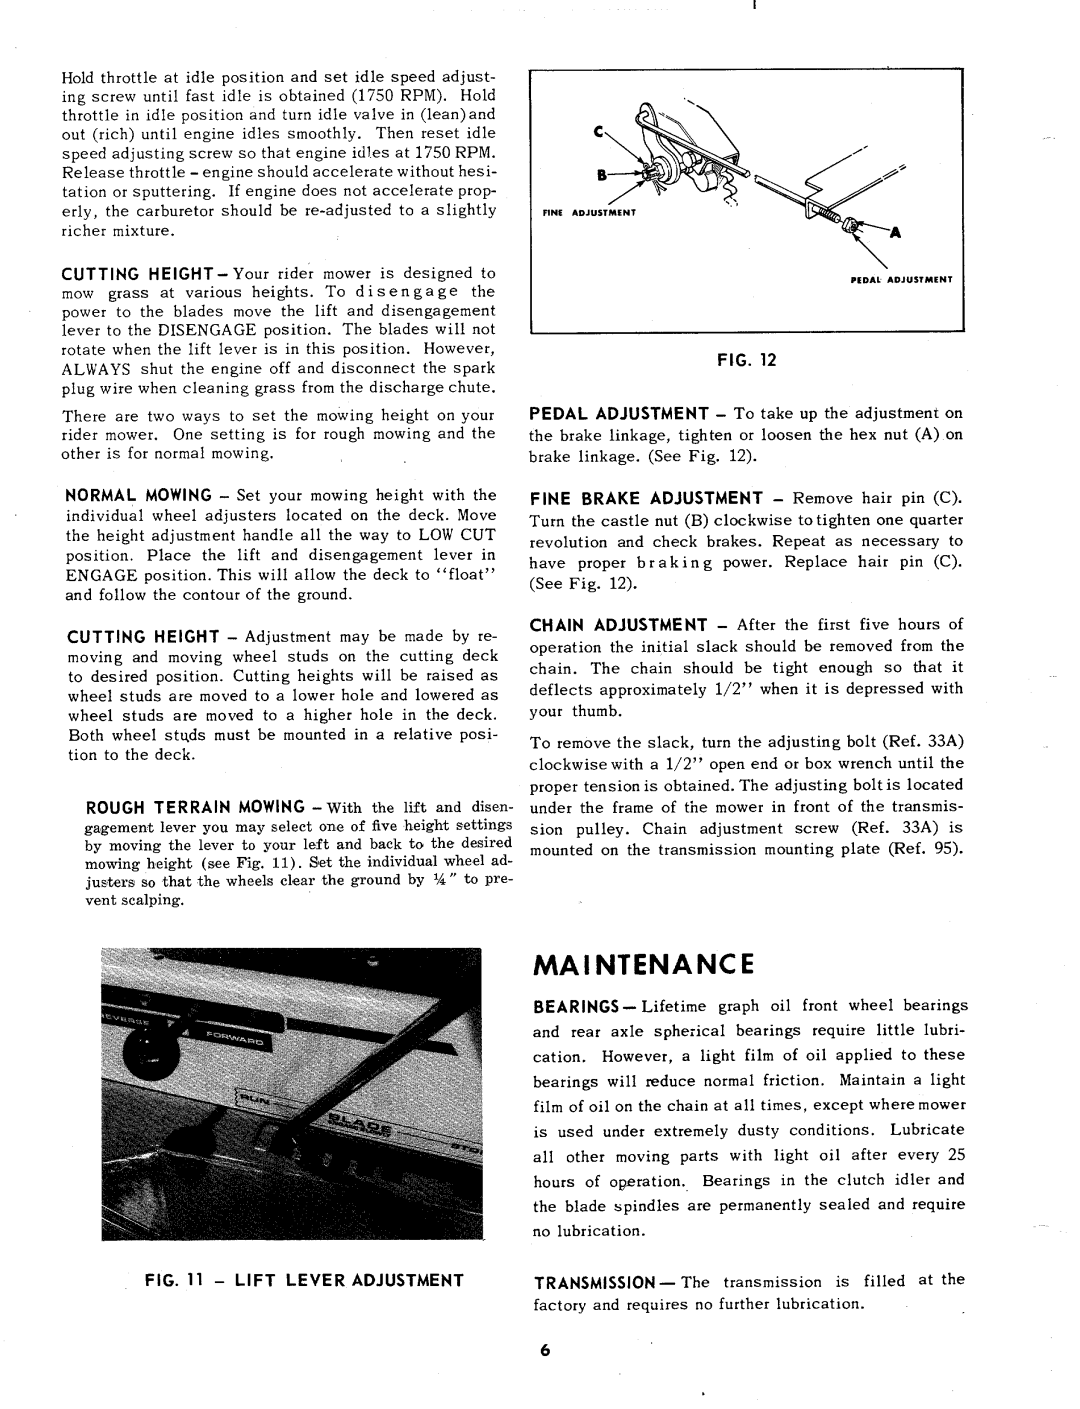 MTD 131-412 manual 